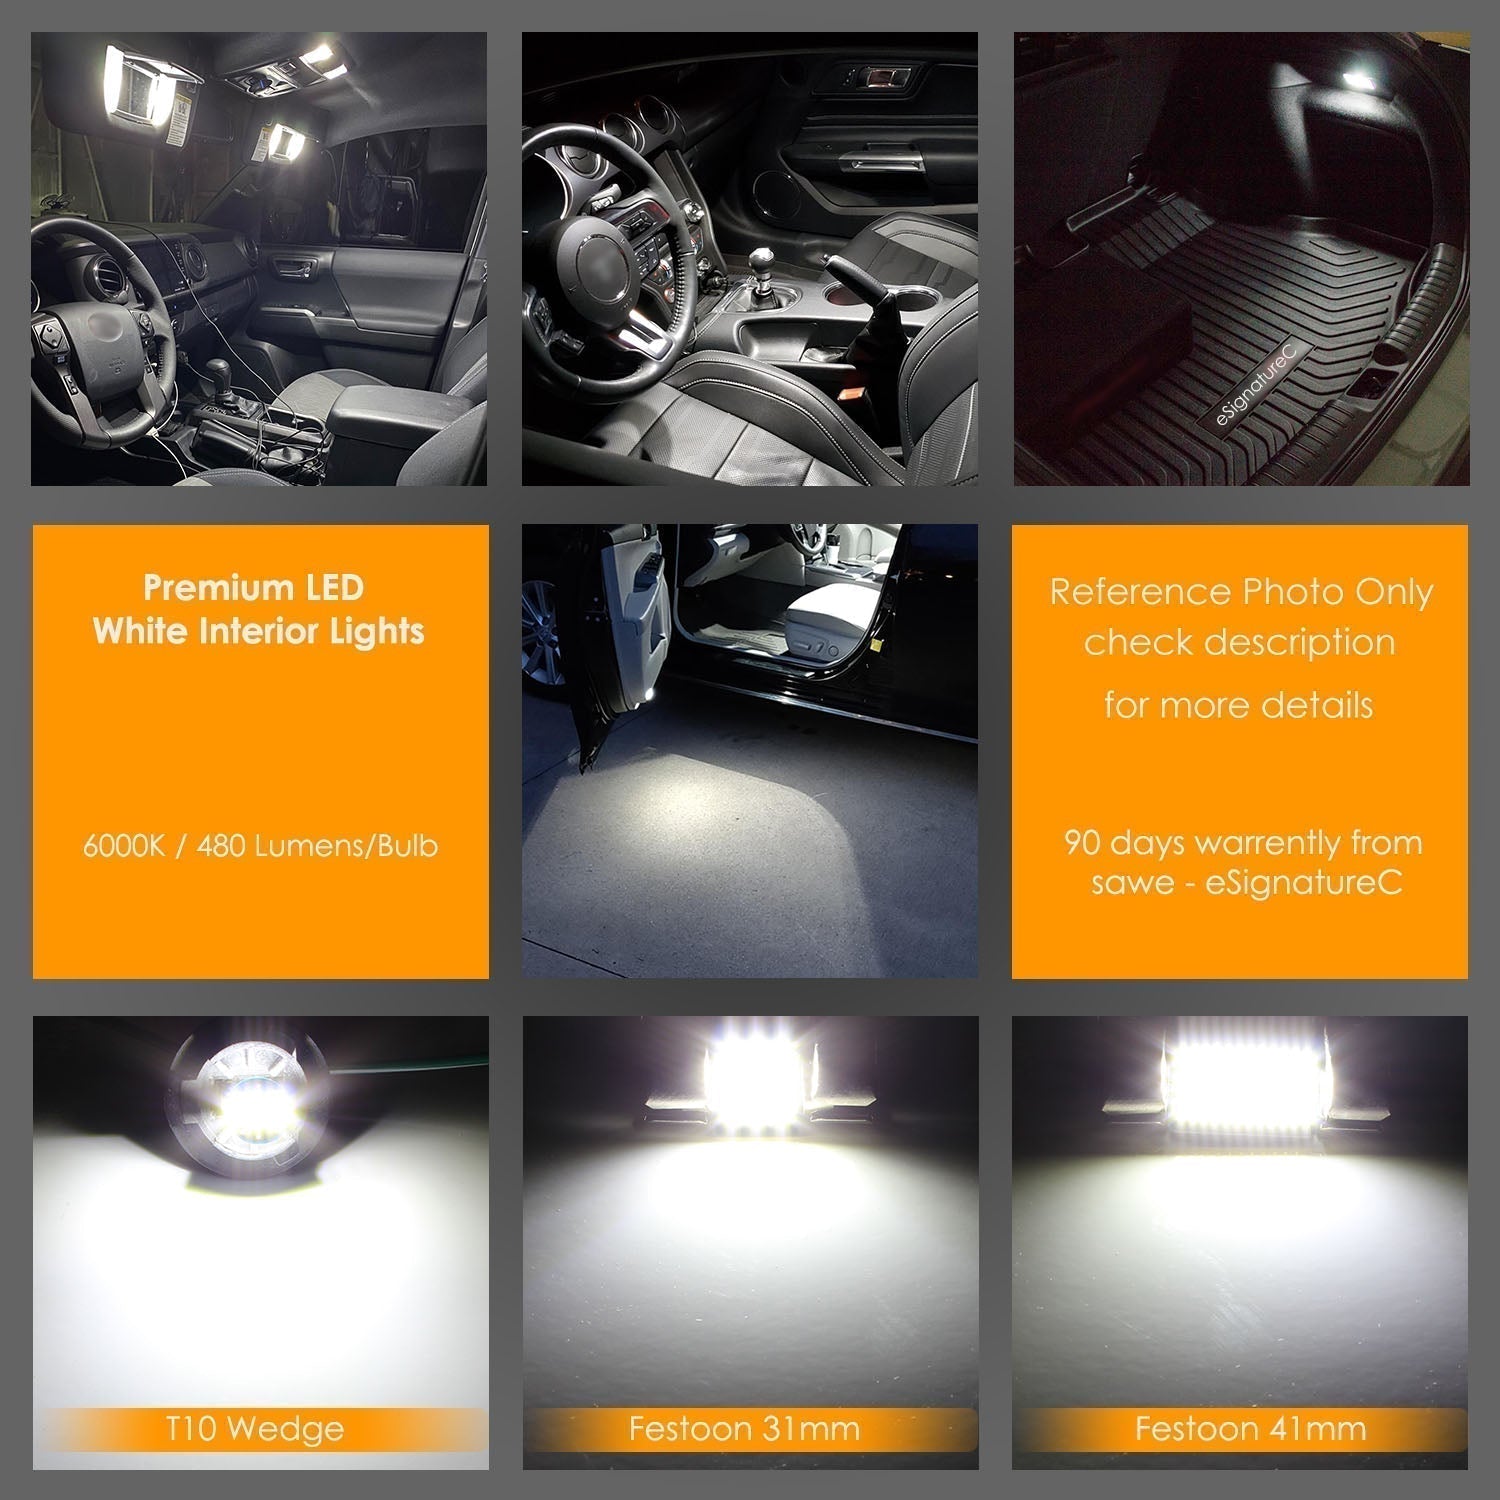 For Chevrolet Corvette C5 Interior LED Lights - Dome & Map Lights Package Kit for 1997 - 2004 - White